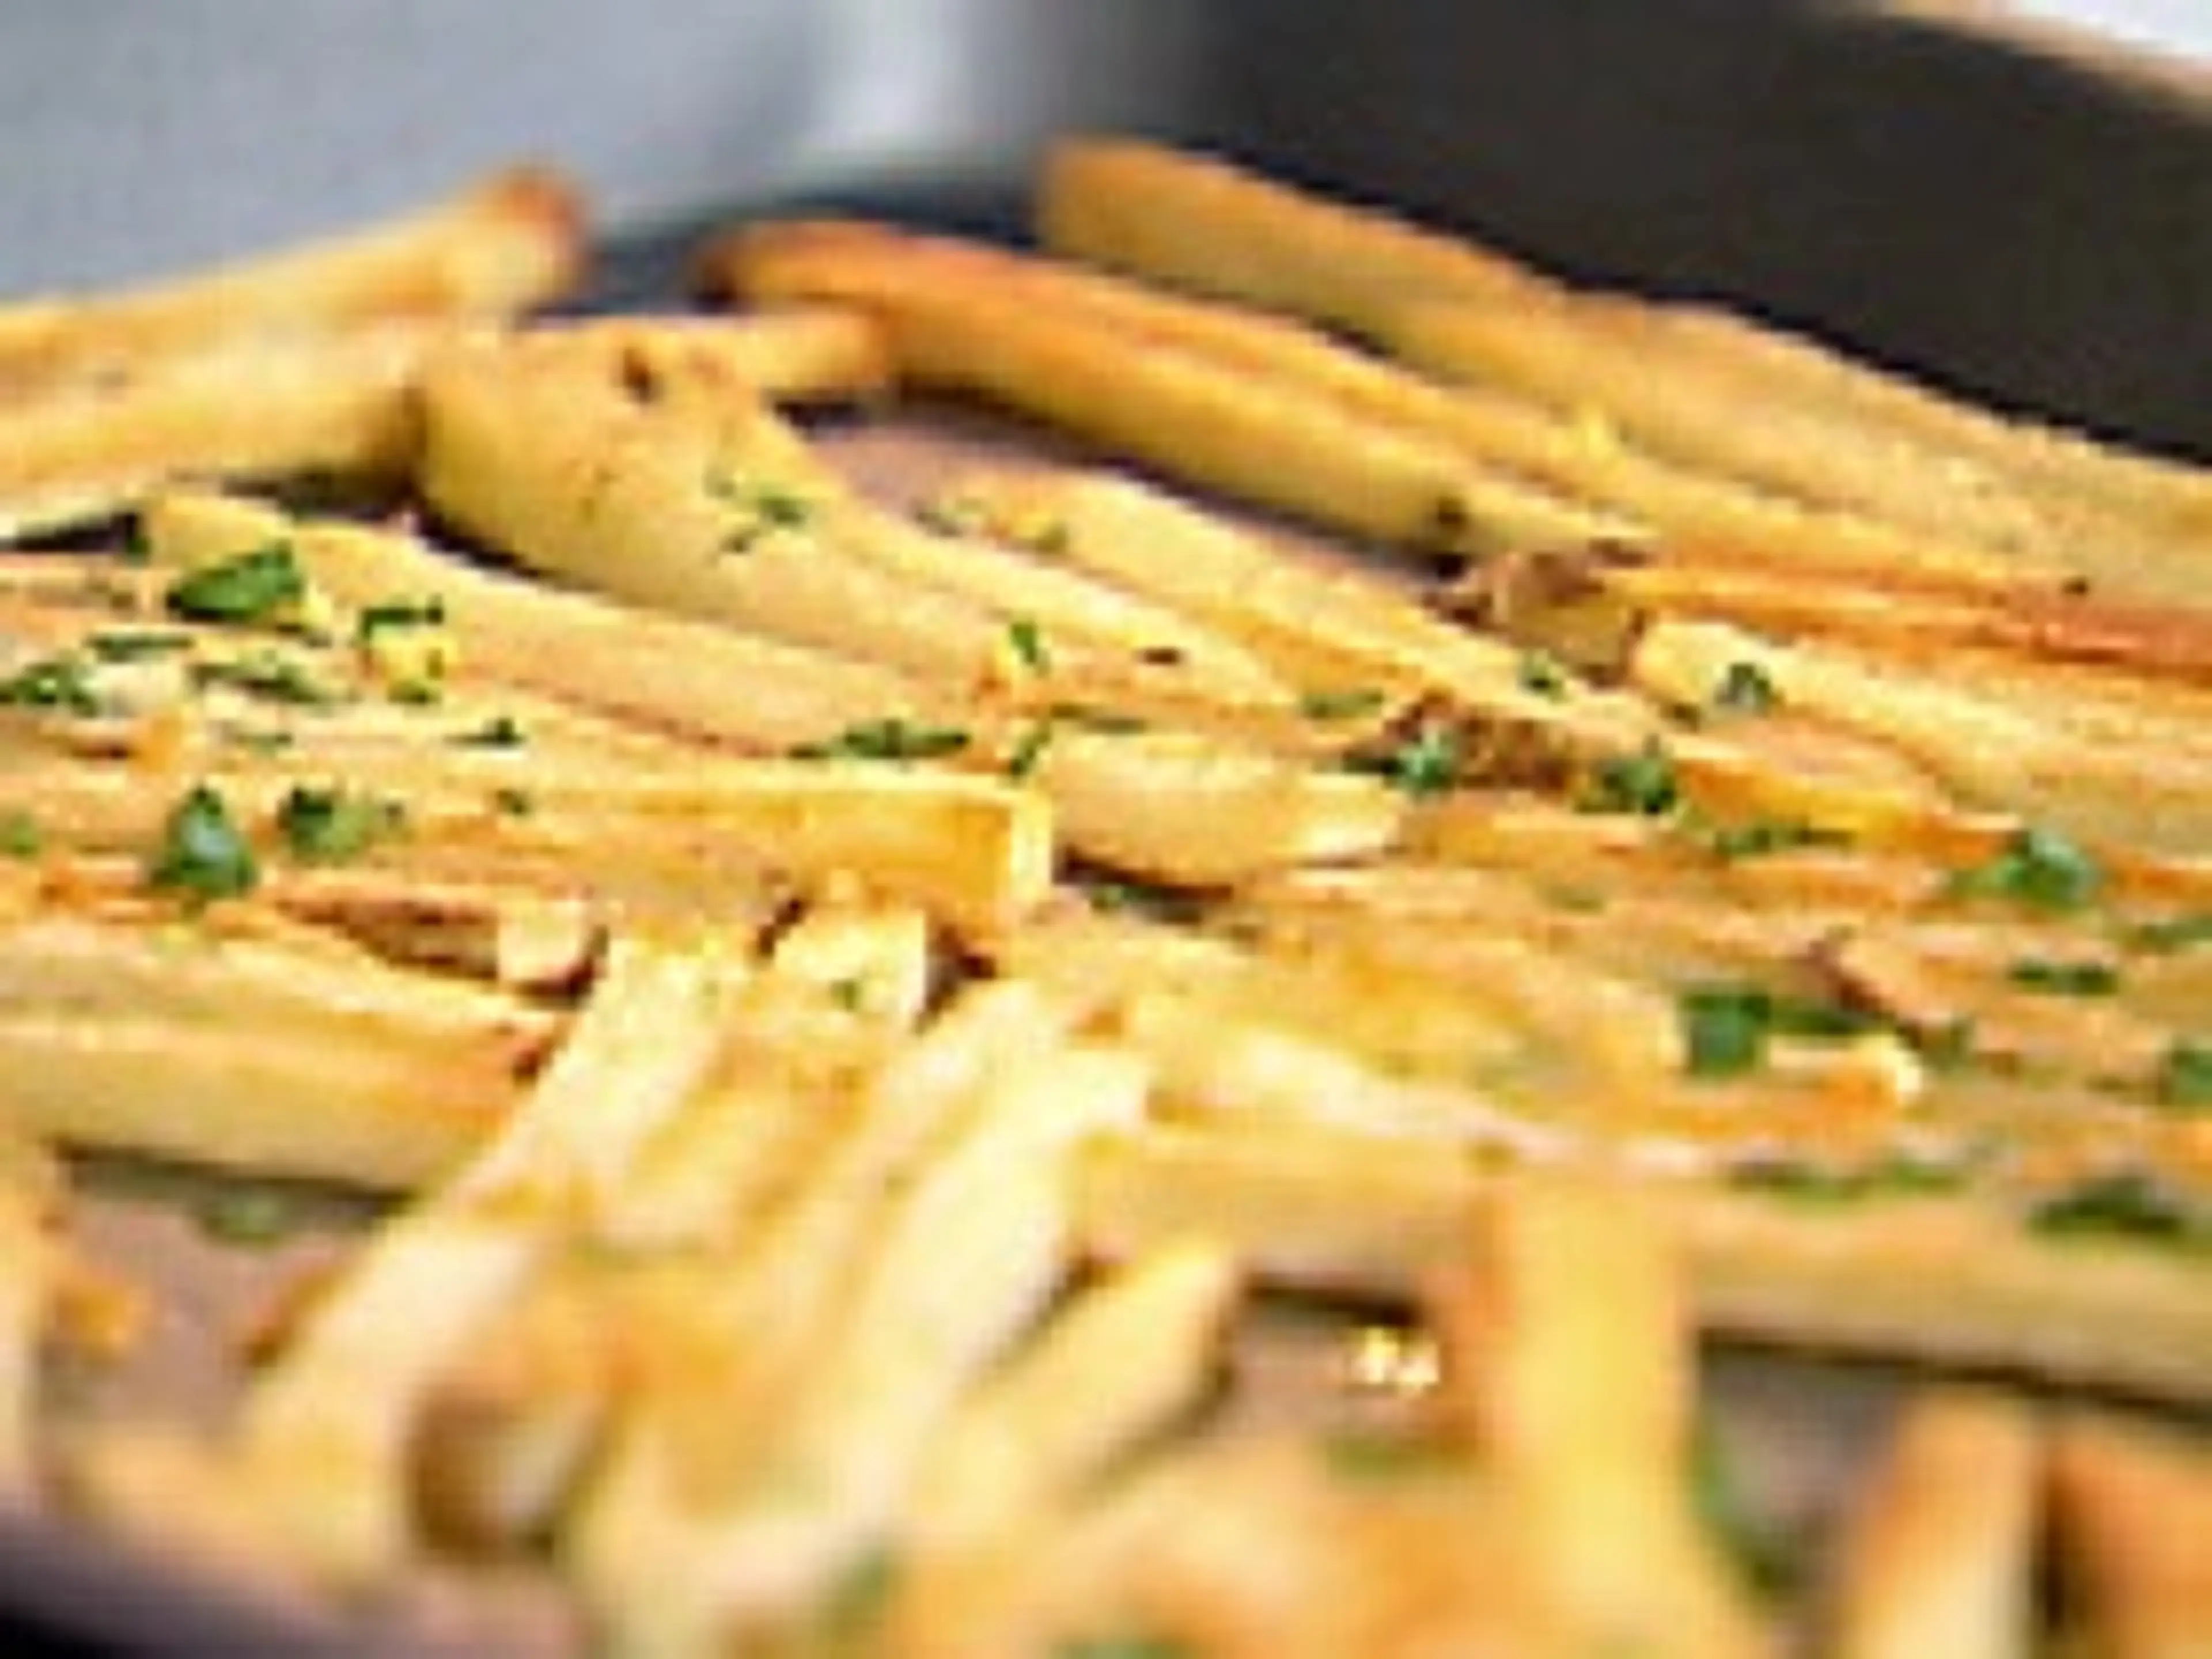 Garlic "Fries"